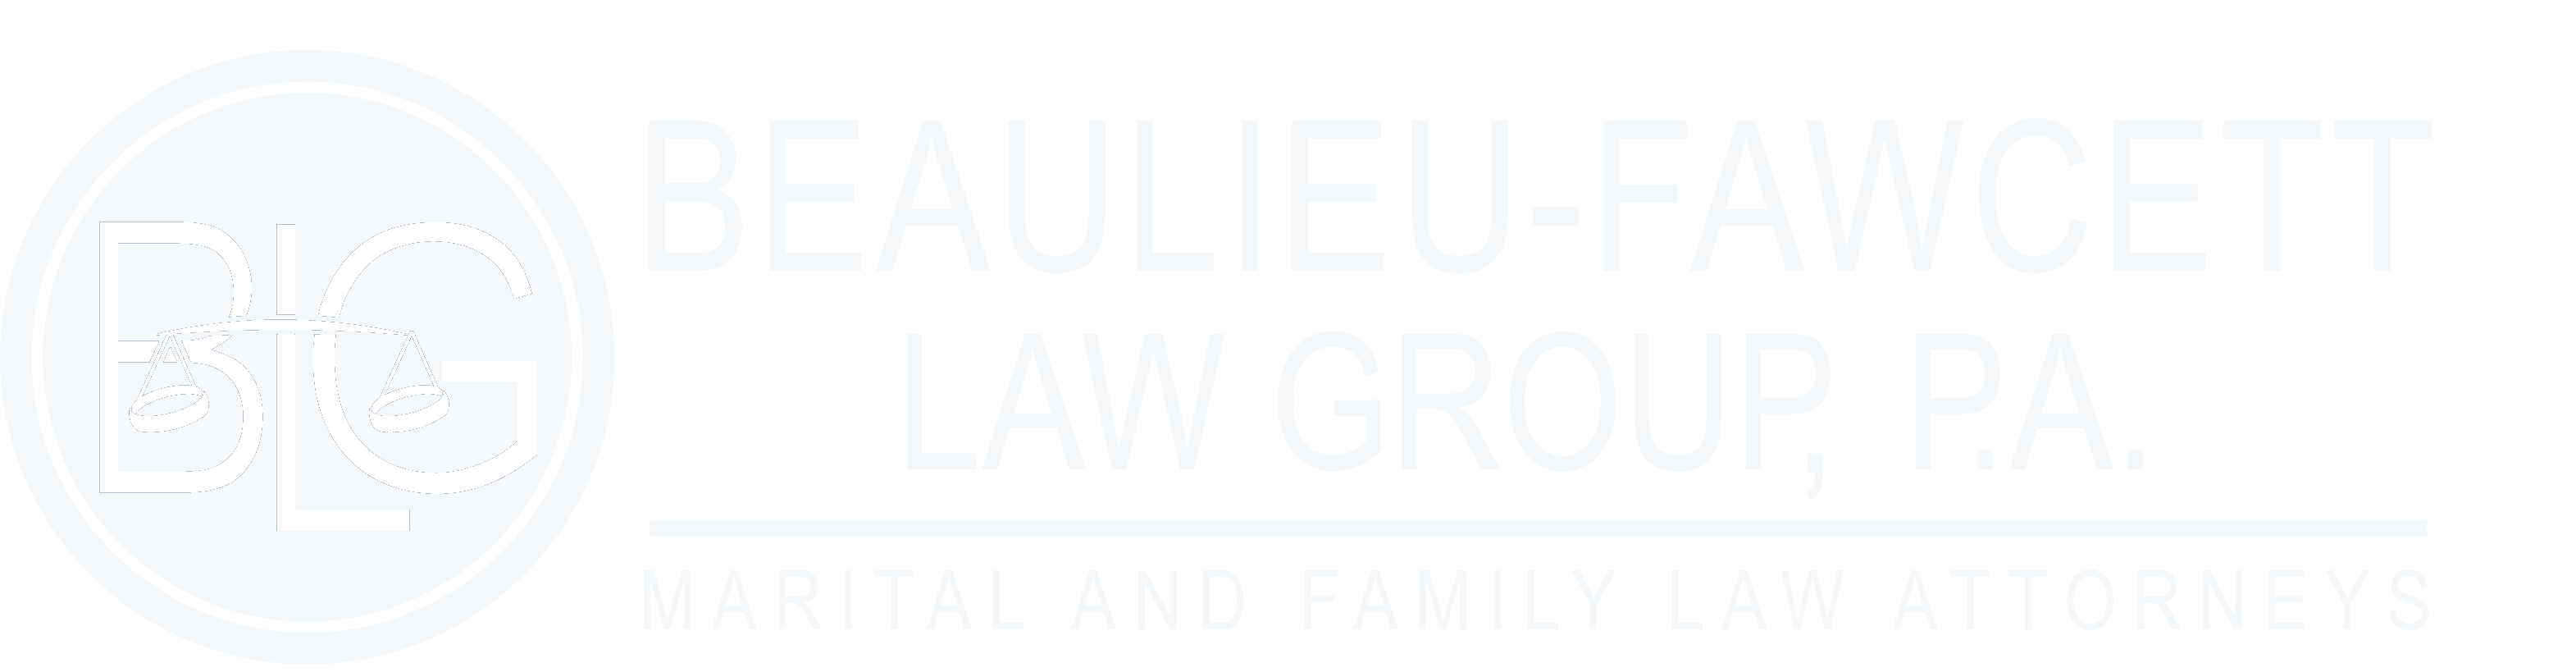 Beaulieu-Fawcett Law Group, P. A.